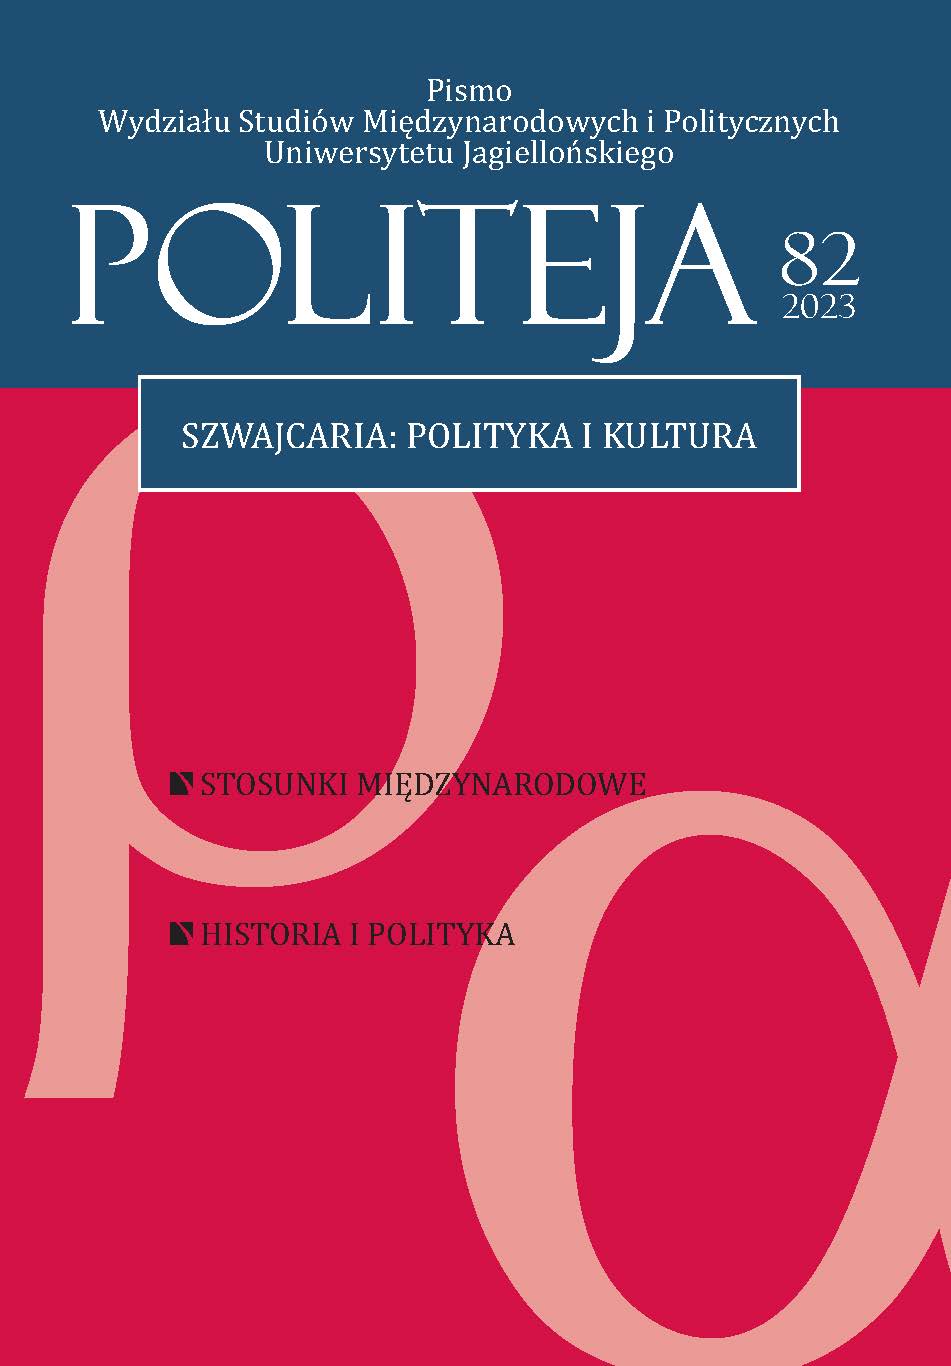 Recenzja numeru 6/2022 rocznika „Teoria Polityki” Cover Image